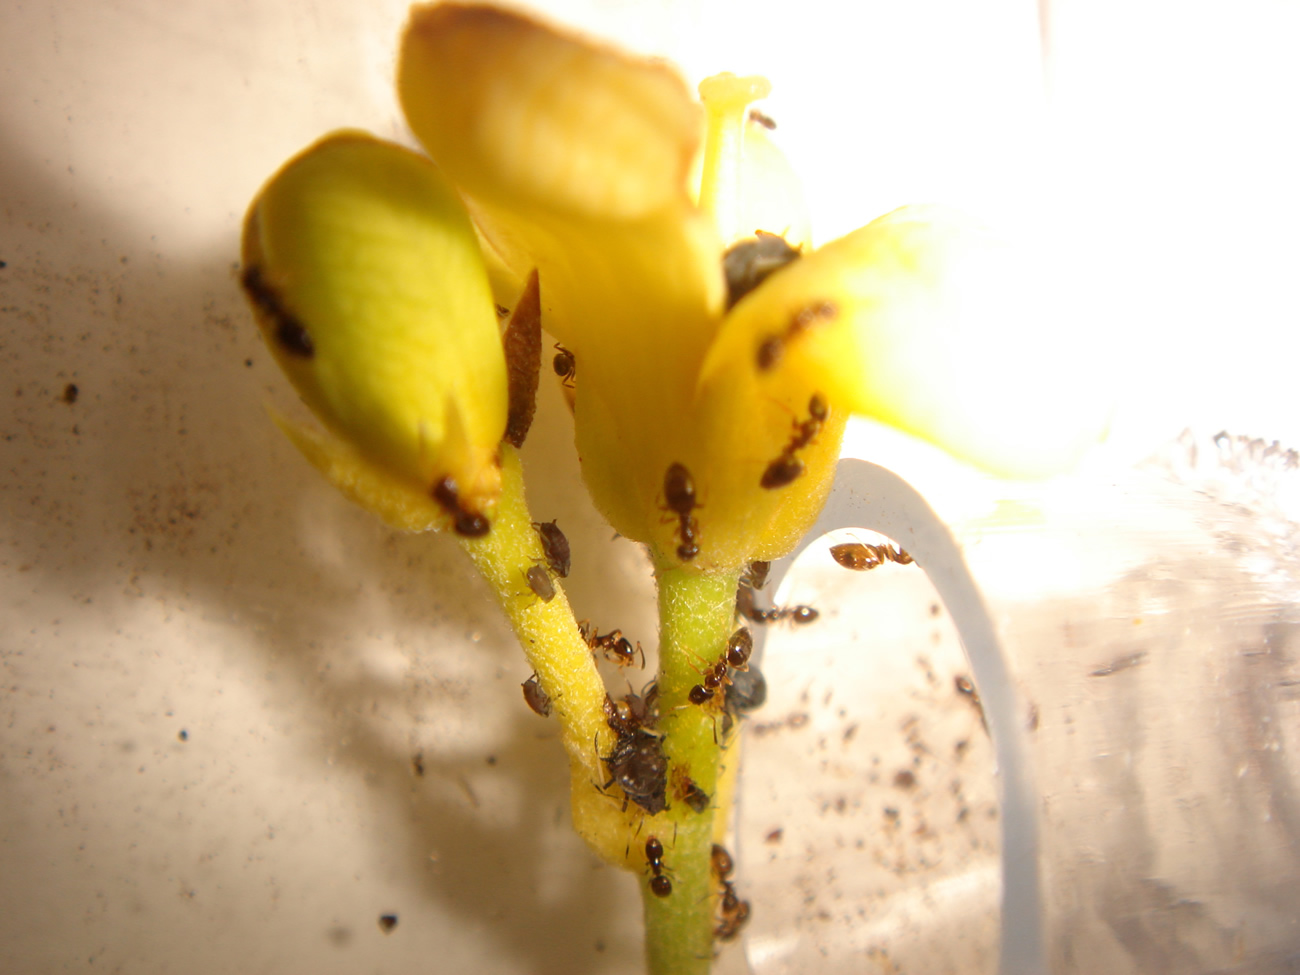 Plagiolepis pygmaea aliment?ndose en una flor de la planta Pittosporum tobira infestada de pulgones